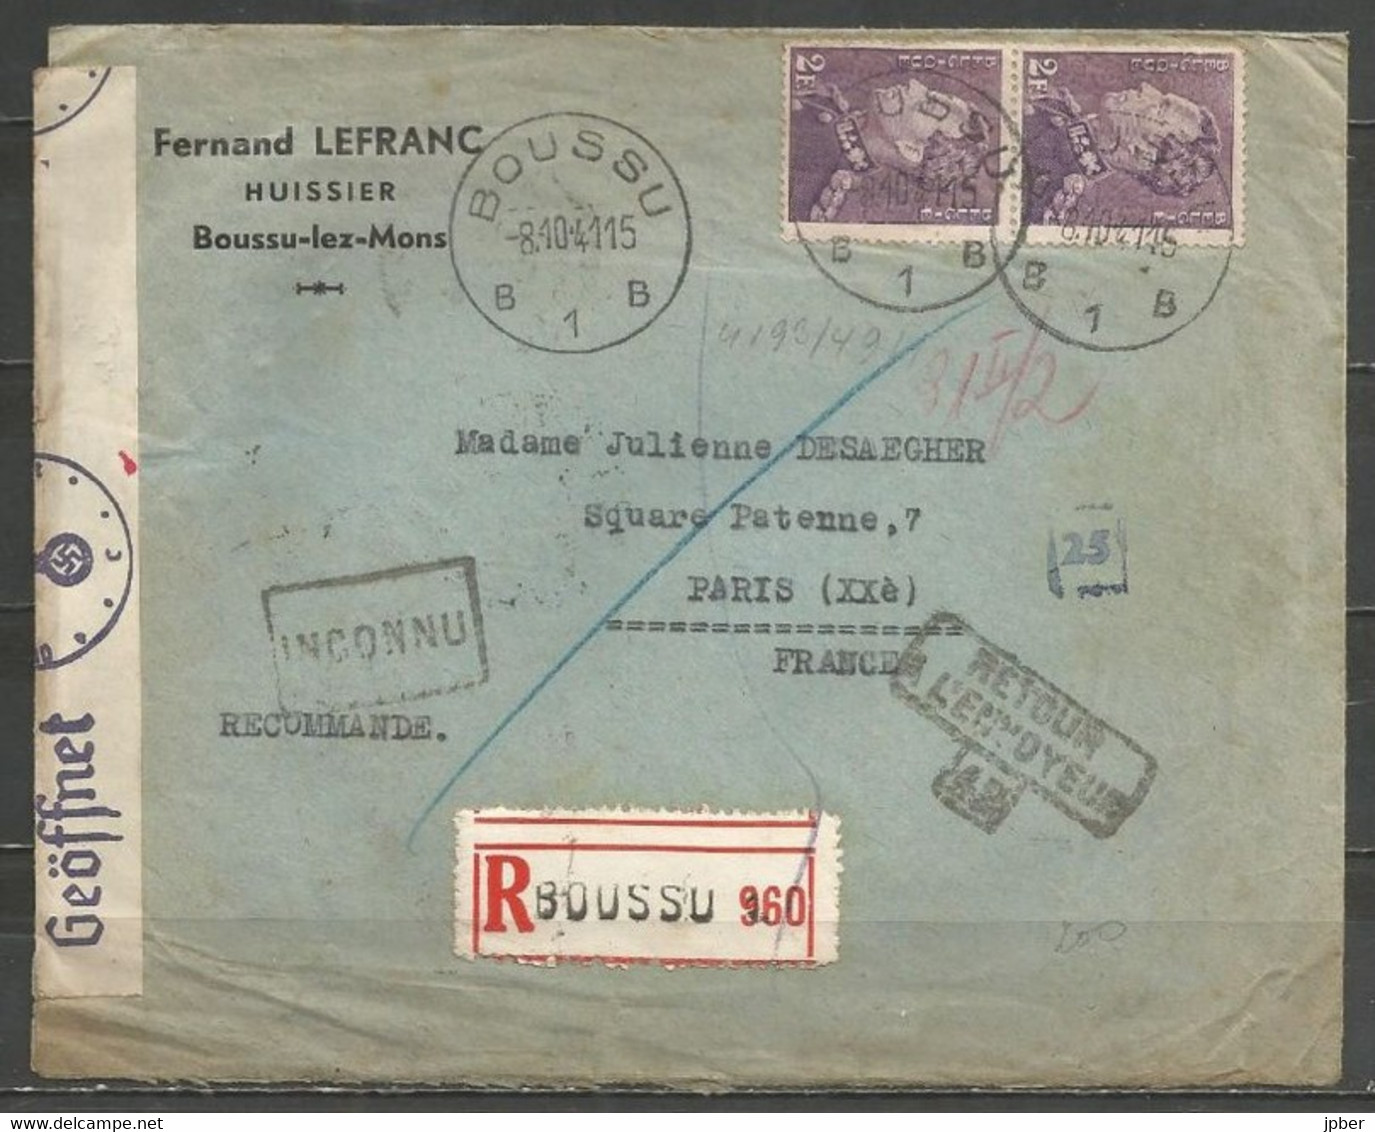 Belgique - Léopold III Poortman N°431 Recommandé Du 8-10-41 De BOUSSU Vers PARIS, Bandelette Censure, Multiples Cachets - 1936-51 Poortman